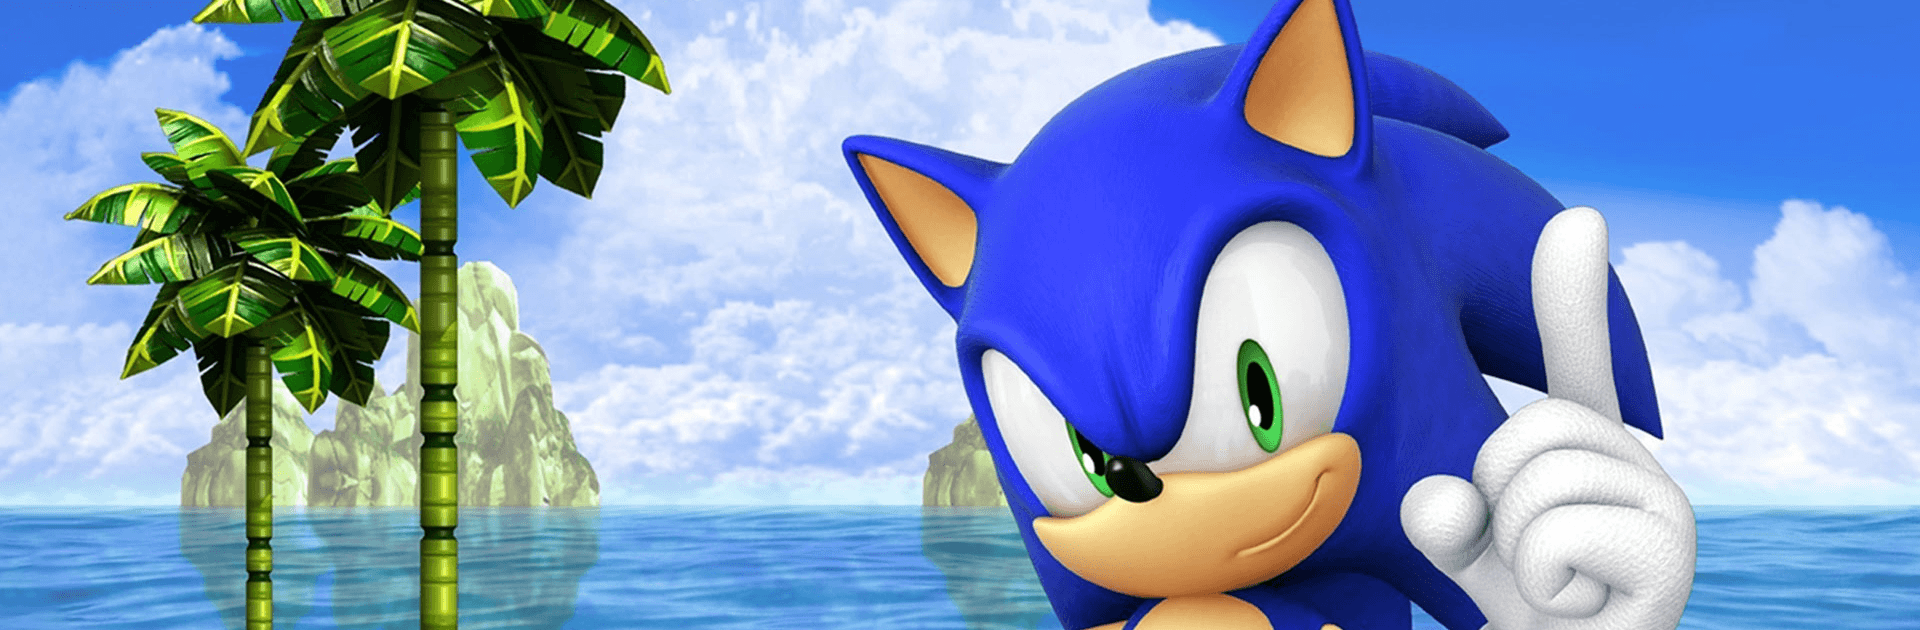 Baixe Sonic The Hedgehog 2 Classic no PC com MEmu